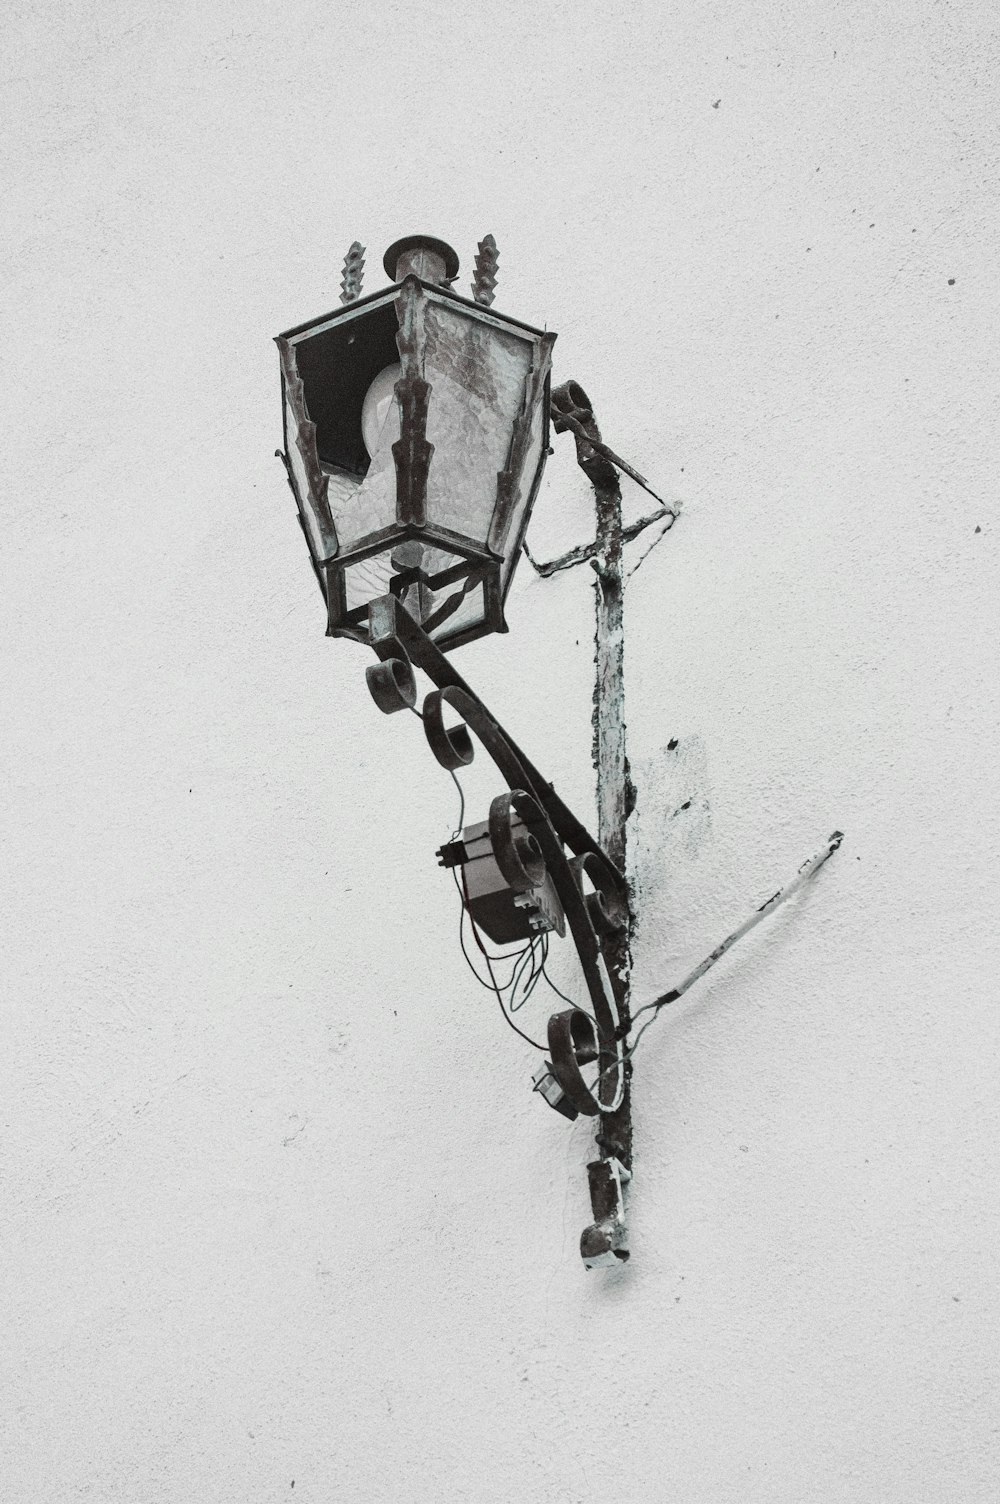 un lampadaire sur un poteau dans la neige